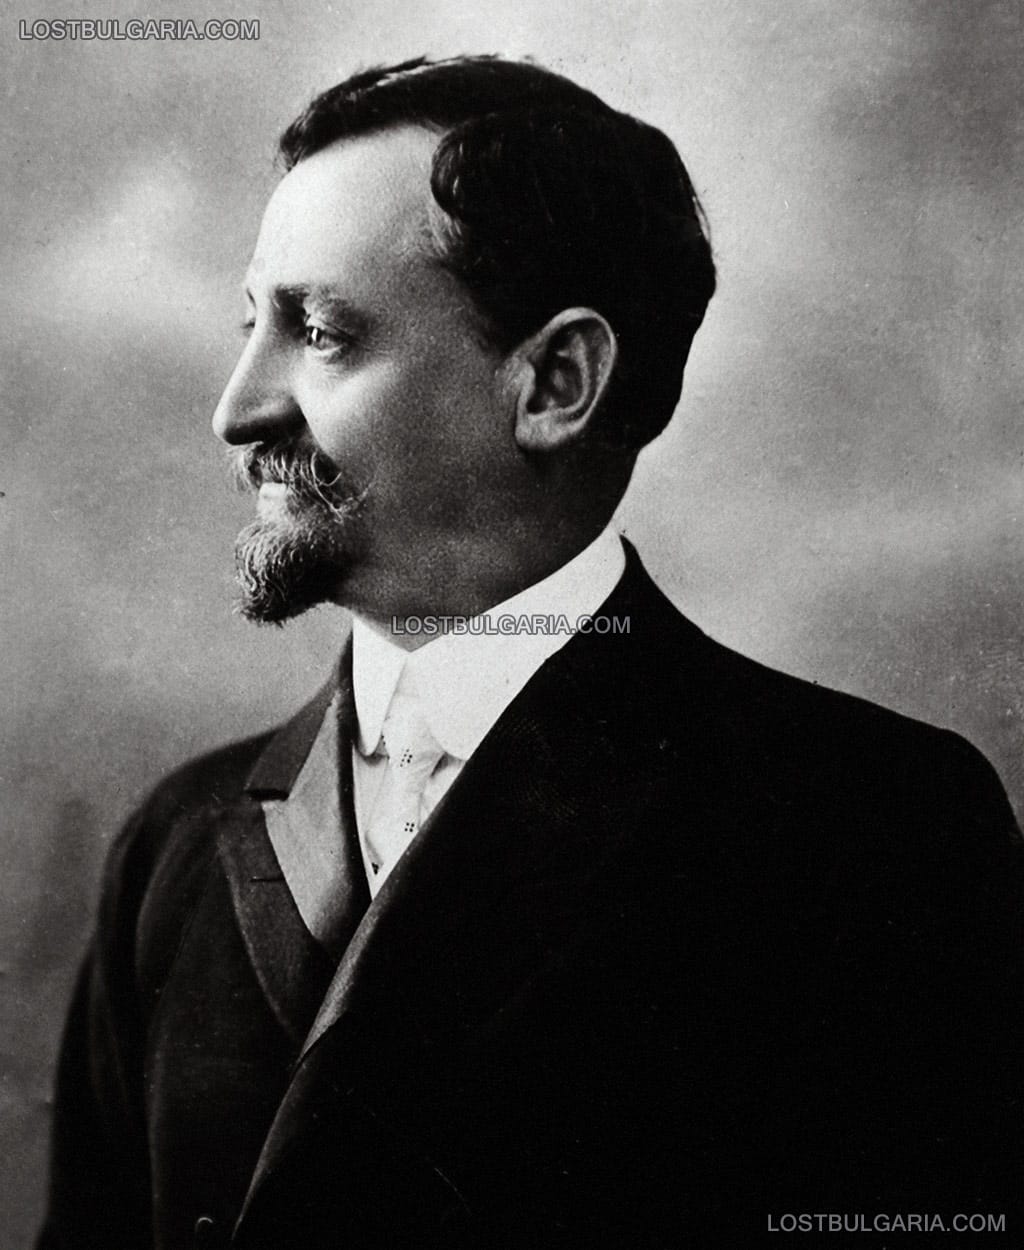 Михаил Такев (1864-1920), Демократическа партия, министър на вътрешните работи, министър на обществените сгради, пътищата и съобщенията, депутат, убит в атентат от анархисти, фотография от 1912-13 г.